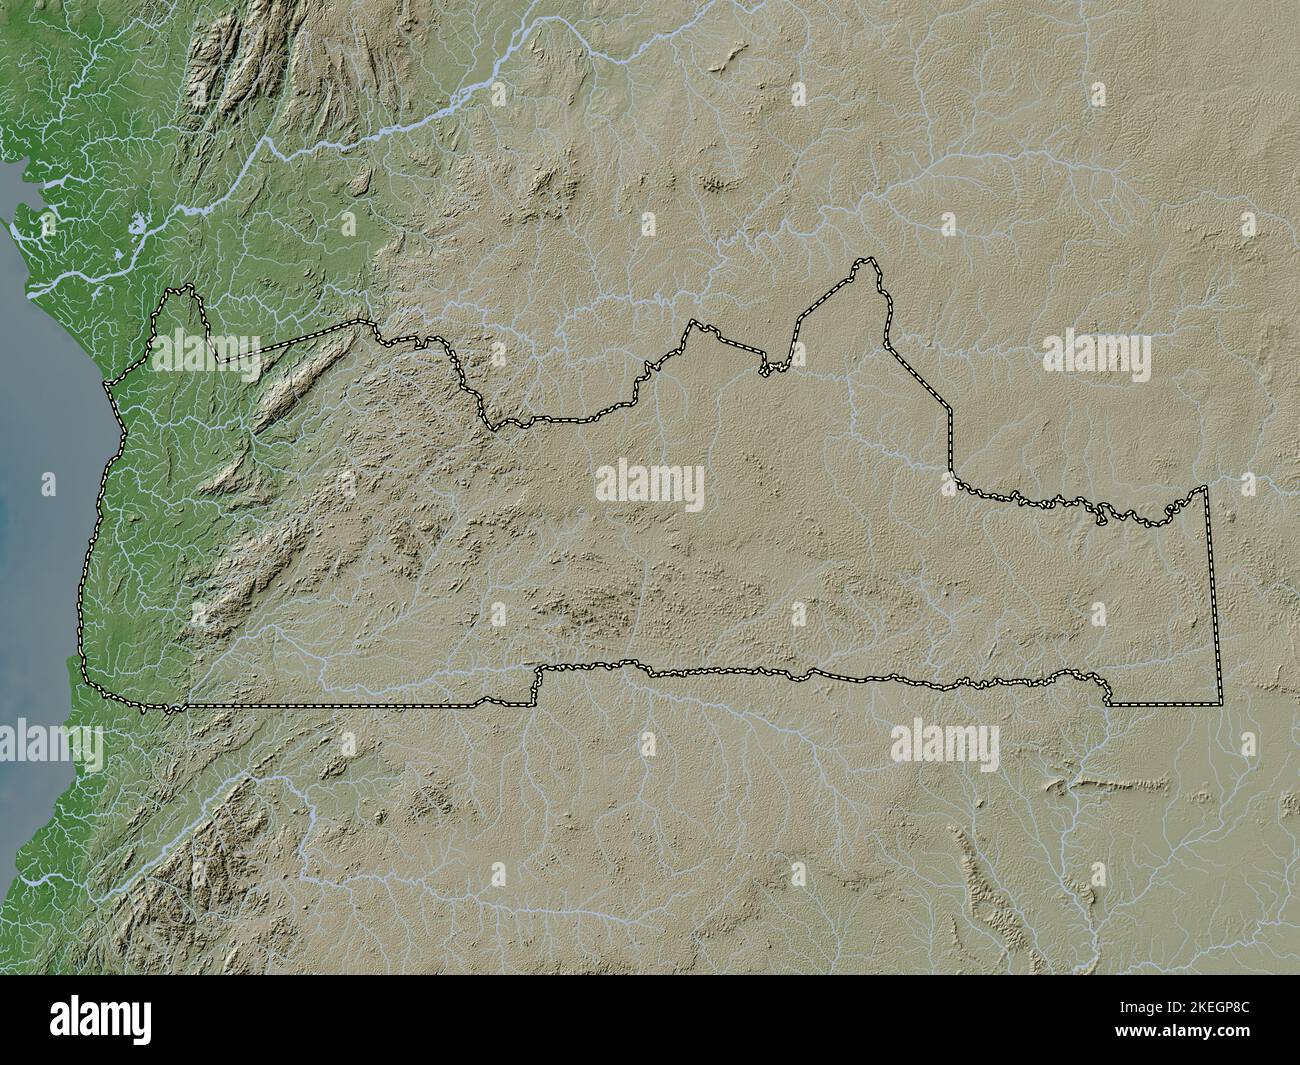 Sud, région du Cameroun. Carte d'altitude colorée en style wiki avec lacs et rivières Banque D'Images